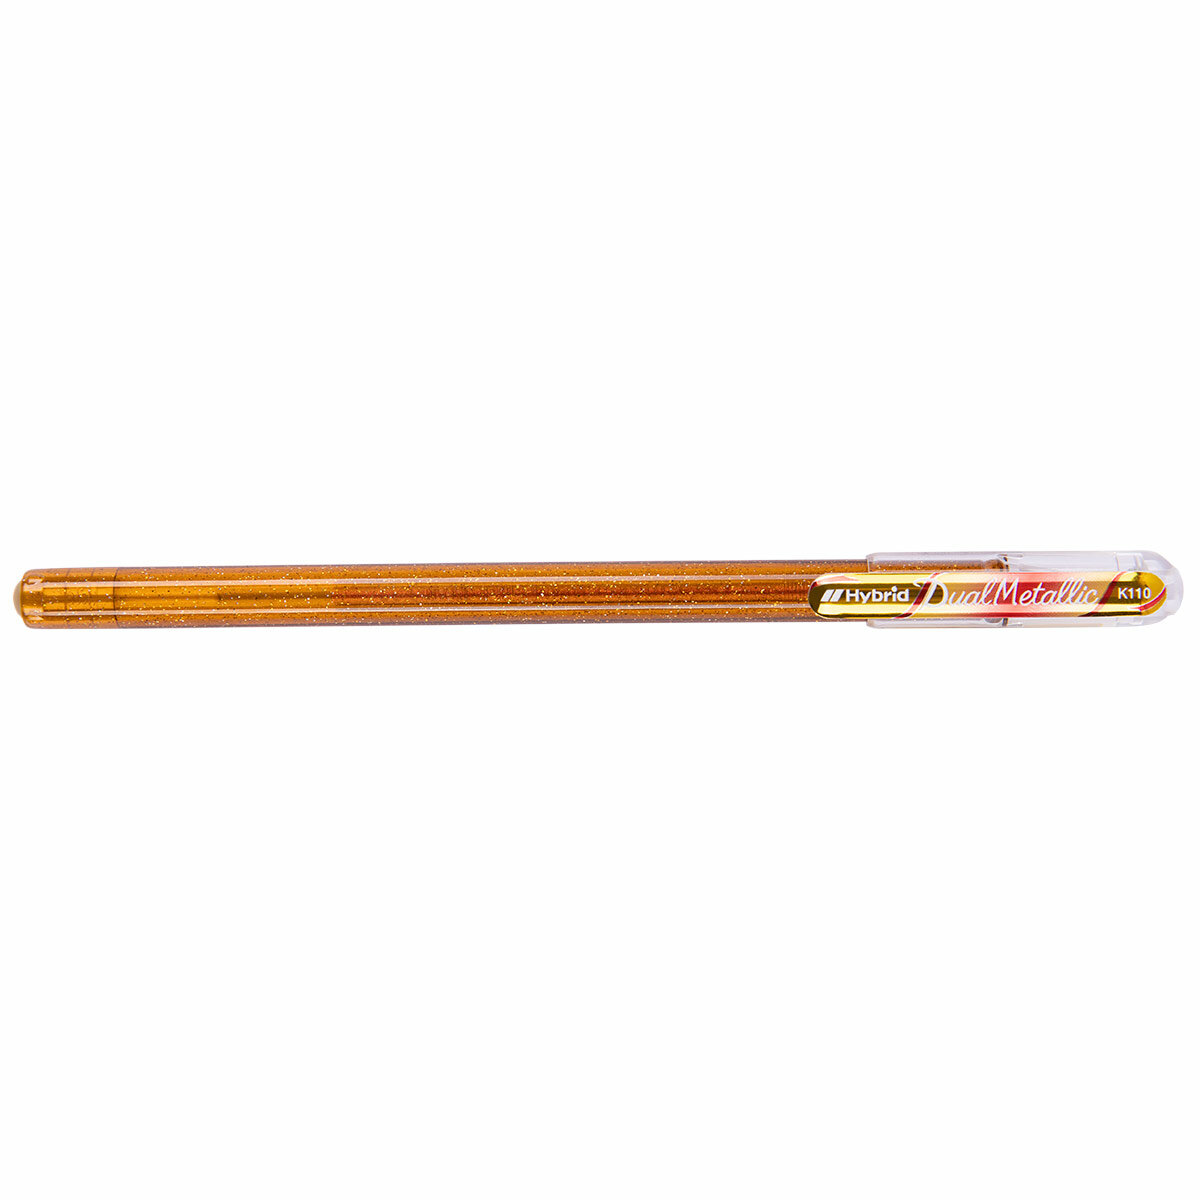 Ручка гелевая "Pentel" Hybrid Dual Metallic, d 1 мм K110-DMXX цвет чернил: красный цвет чернил: золотистый